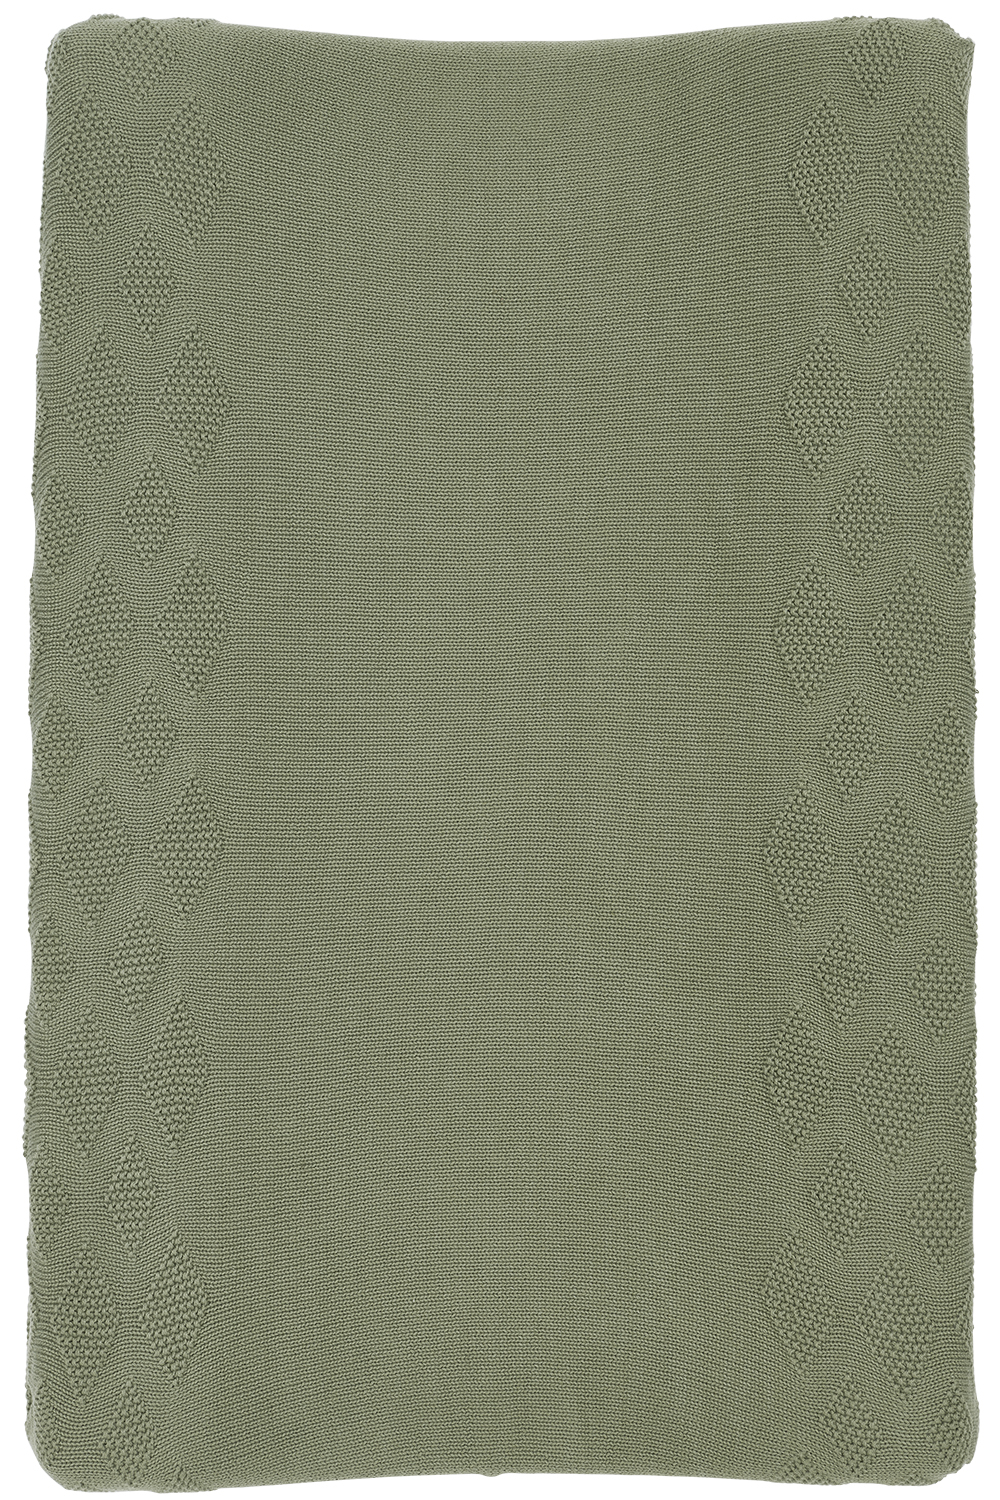 Aankleedkussenhoes biologisch Diamond - forest green - 50x70cm